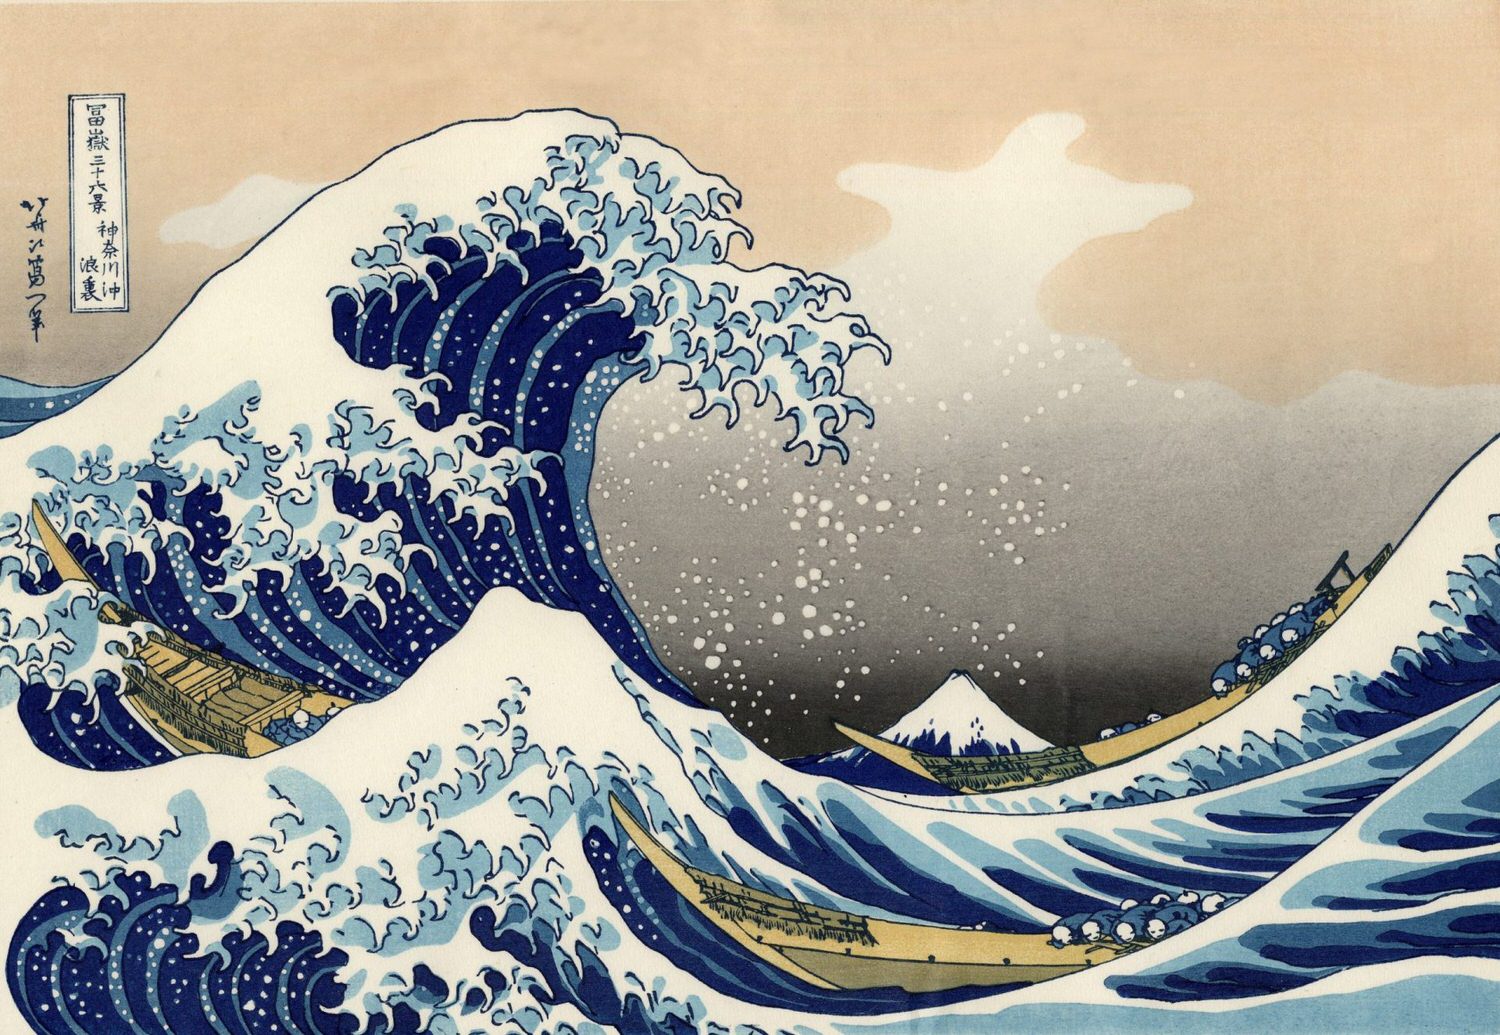 電影 百日紅 影評 Miss Hokusai 浮世人生 浮世繪 Ariel Hsu的祕密花園